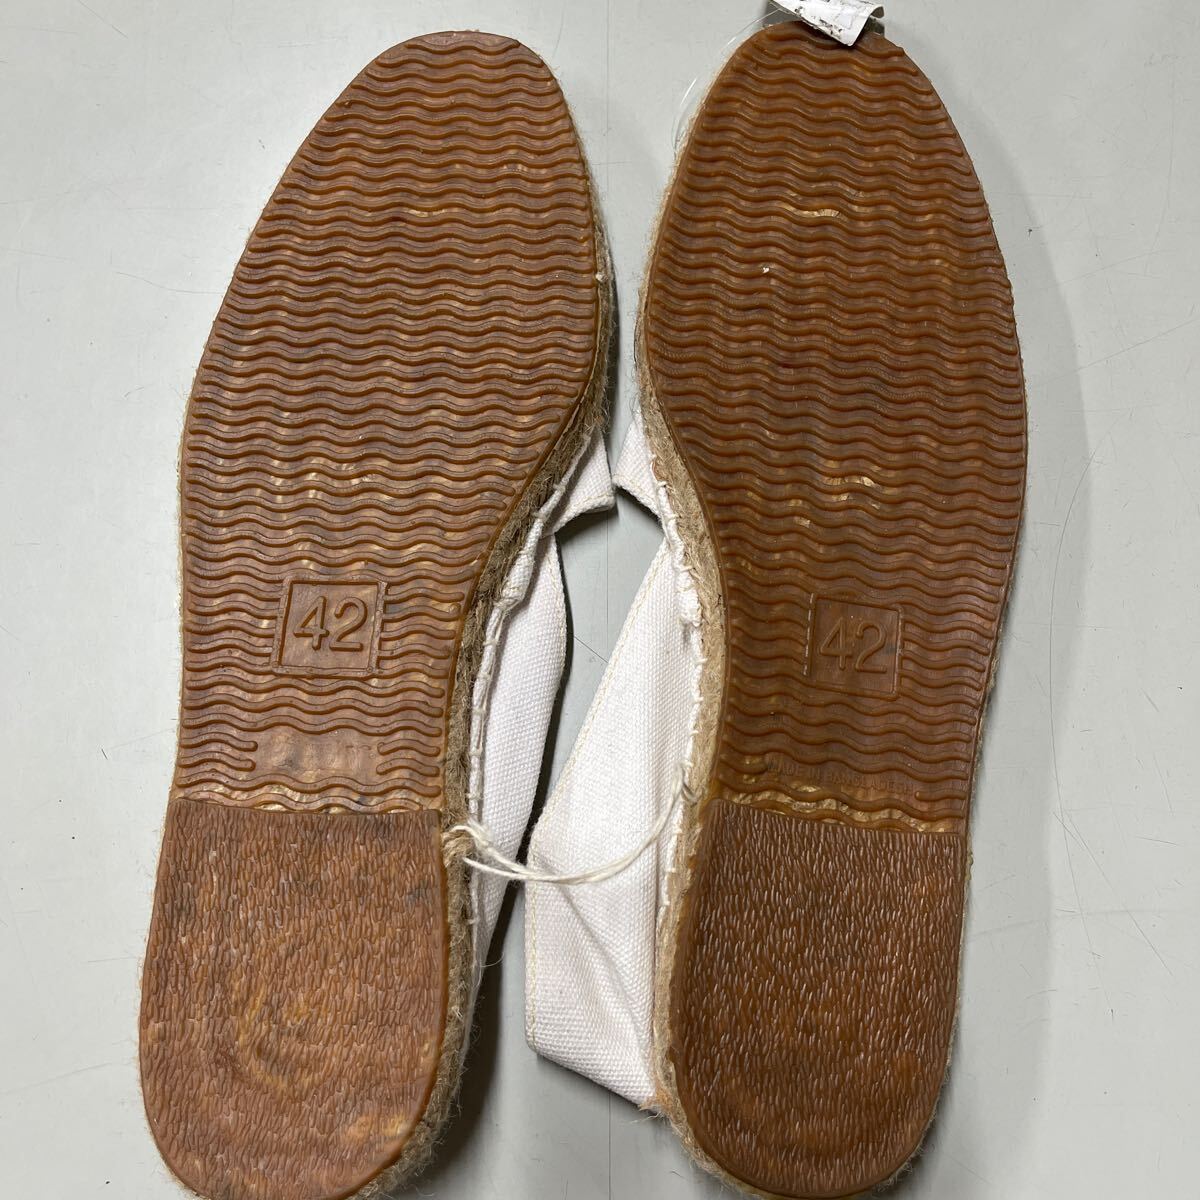 SURZO サンダル シューズ スリッポン 靴 エスバドリュー エスパ スルジョー サイズ42 26.0 26.5センチ メンズ 白 ホワイト 未使用_画像4